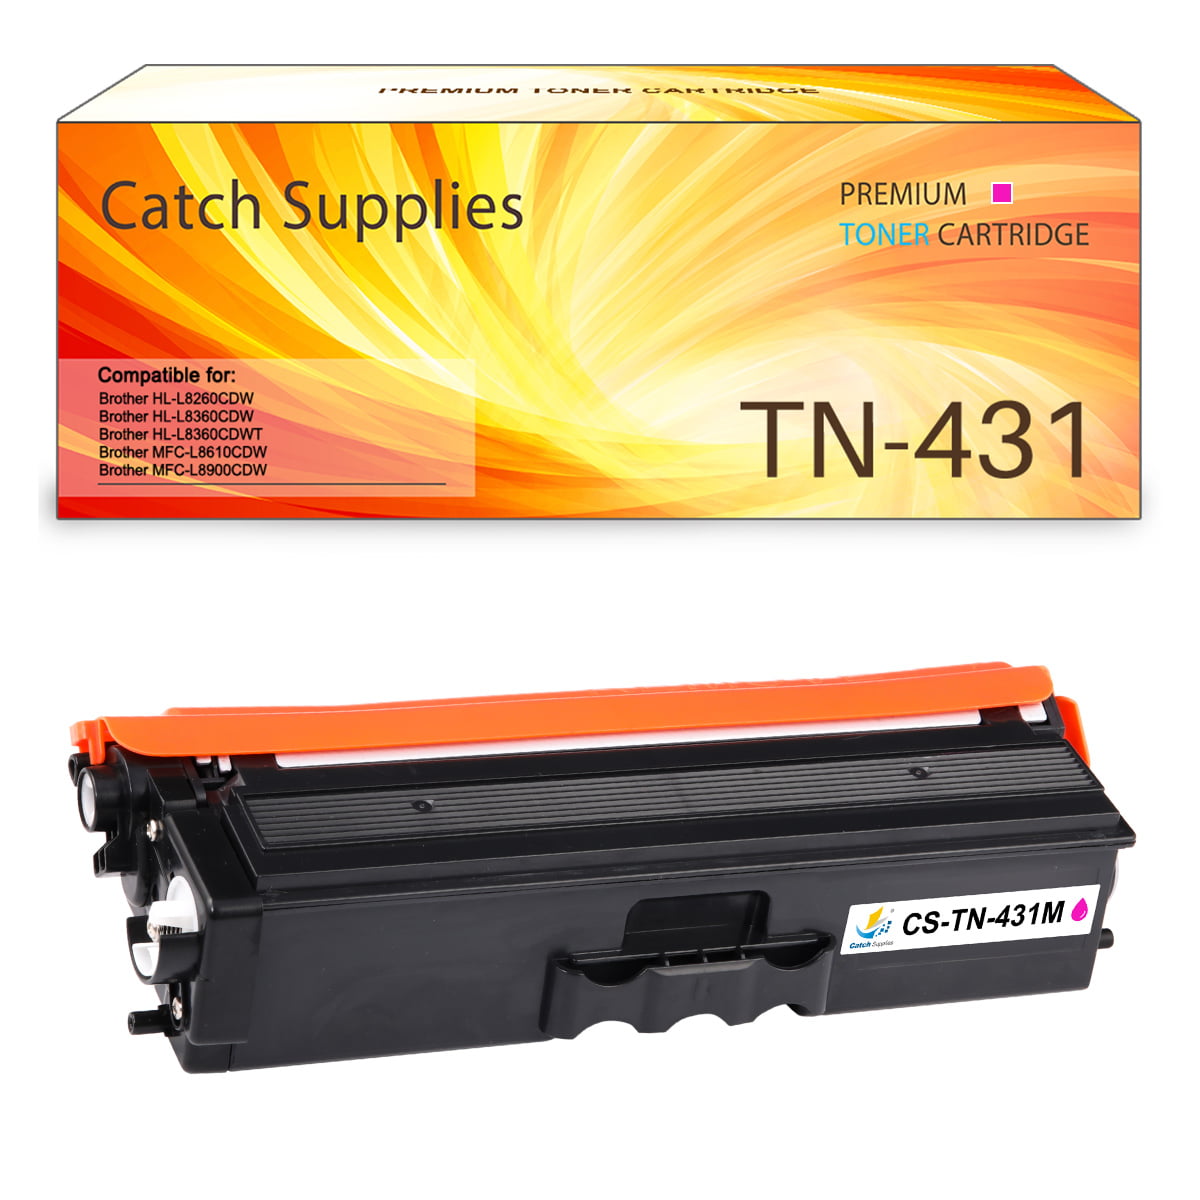 L9310CDW High Yield Generic Cartridge of TN433 for HL-L8360CDW Brother TN436 Toner L8360CDWT MFC L8900CDW,L9570CDW Black X 2 